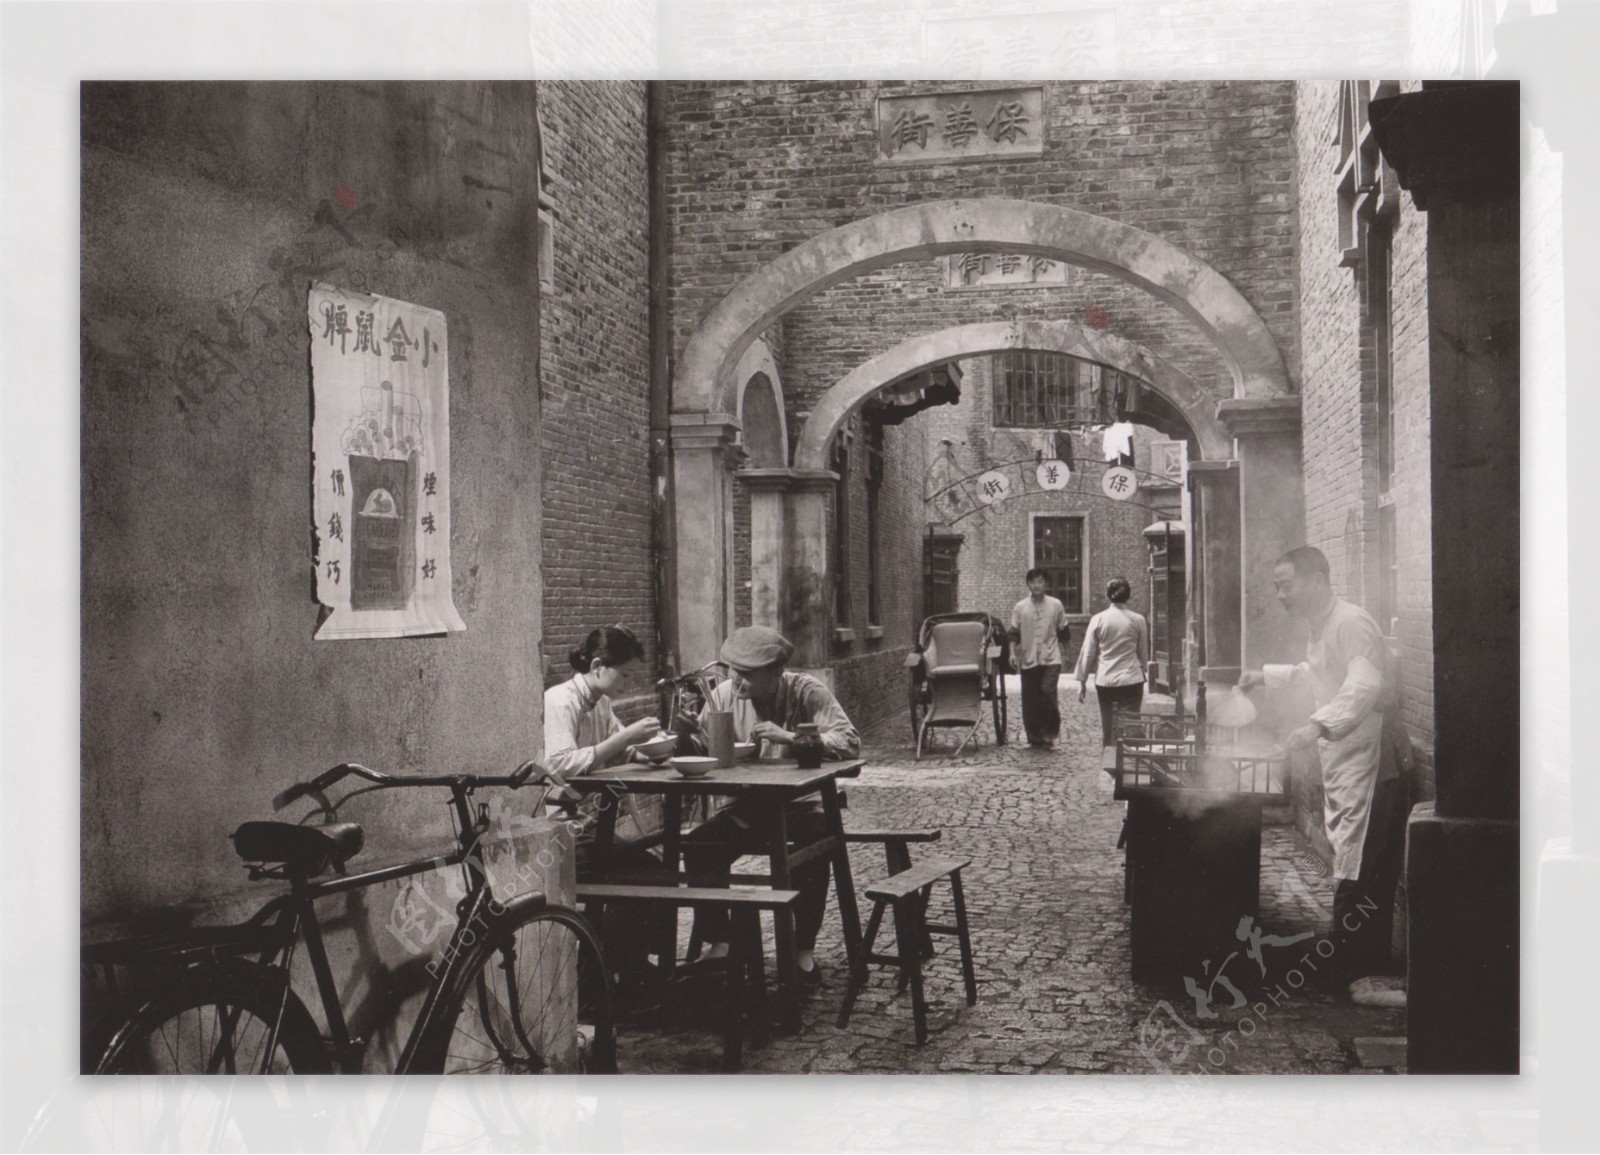 老上海街道图片